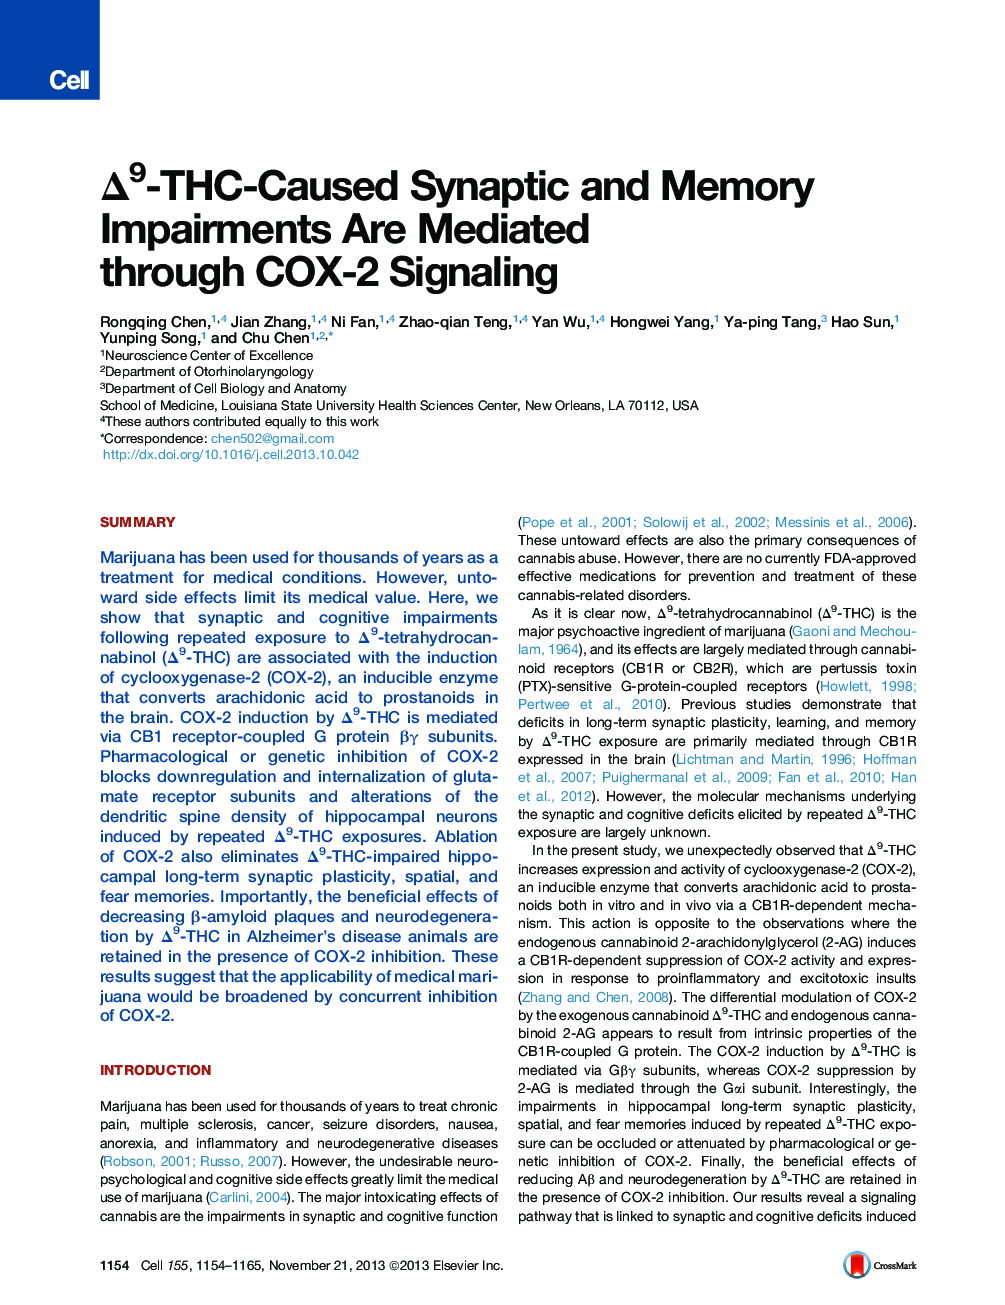 Δ9-THC-Caused Synaptic and Memory Impairments Are Mediated through COX-2 Signaling